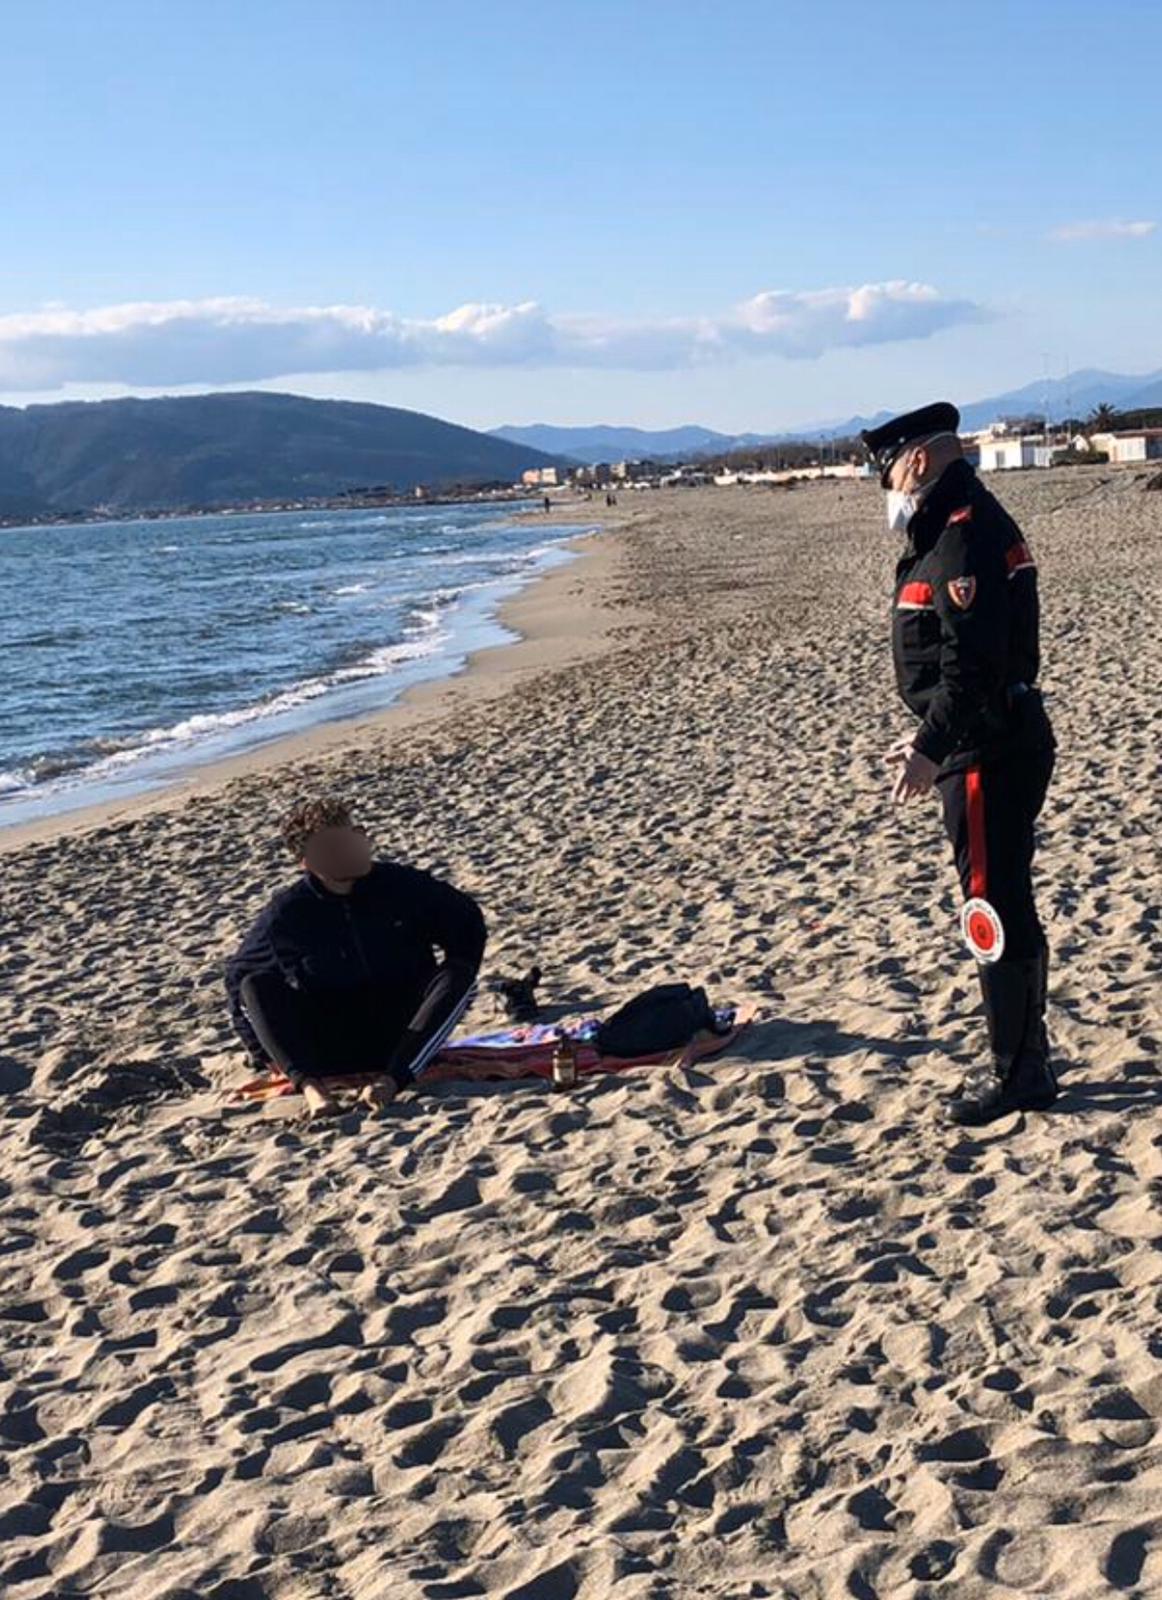 Coronavirus, i “furbetti” beccati in spiaggia a prendere il sole dai Carabinieri di Massa Carrara: uno spezzino naturista trovato nudo